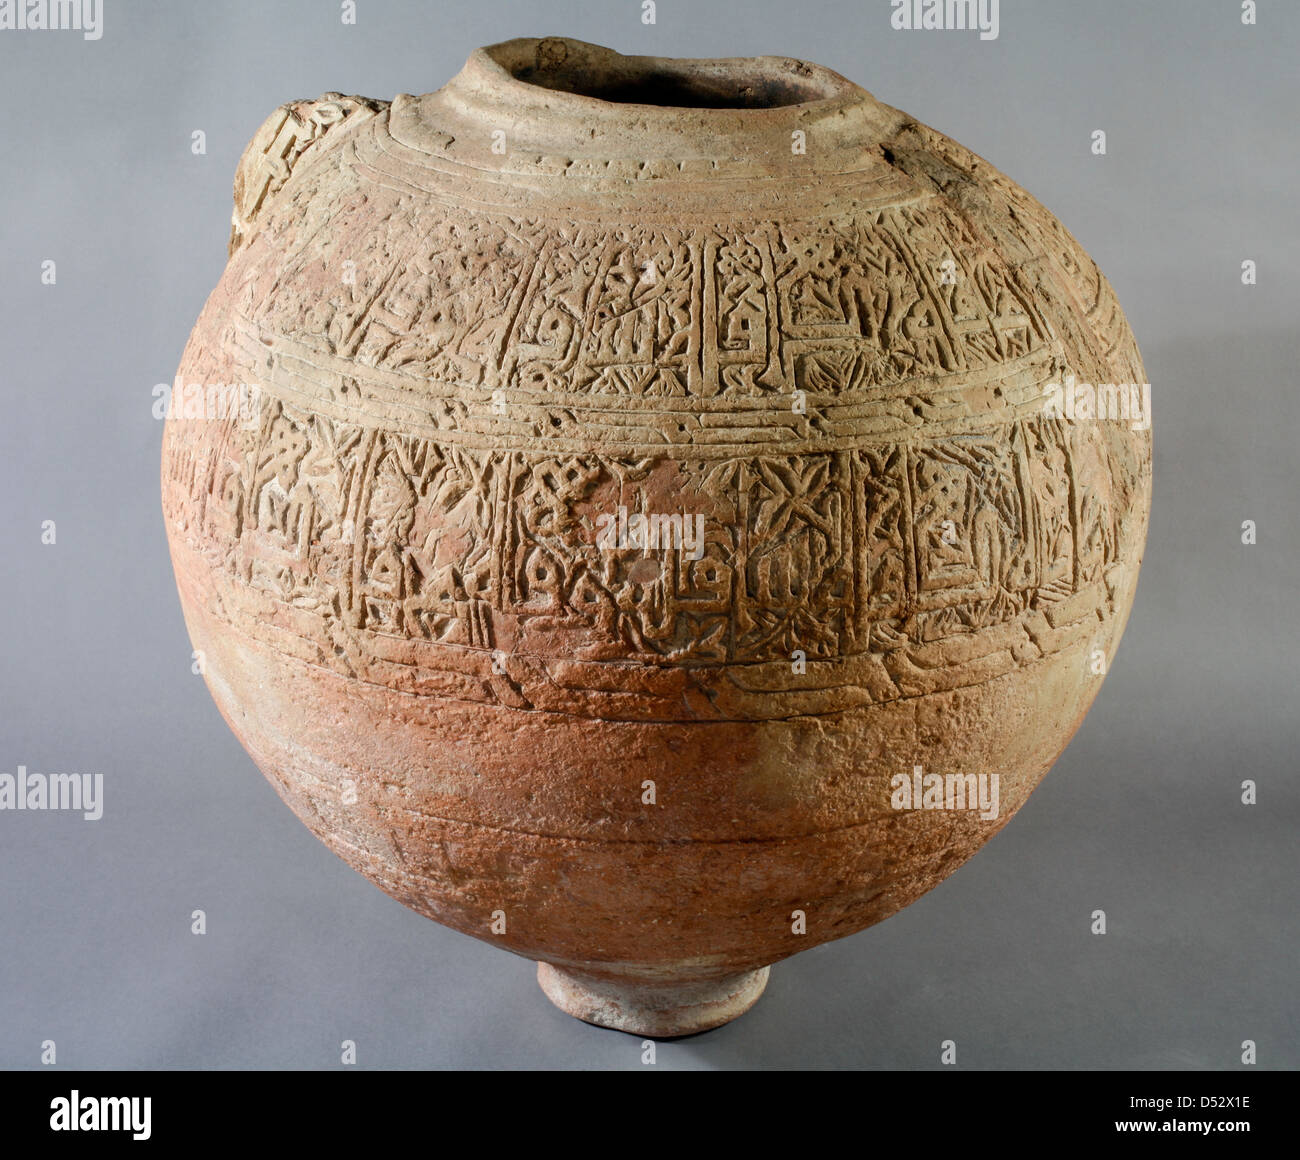 L'Amphora, médiévale islamique, détail, Musée archéologique de Séville, Espagne Banque D'Images